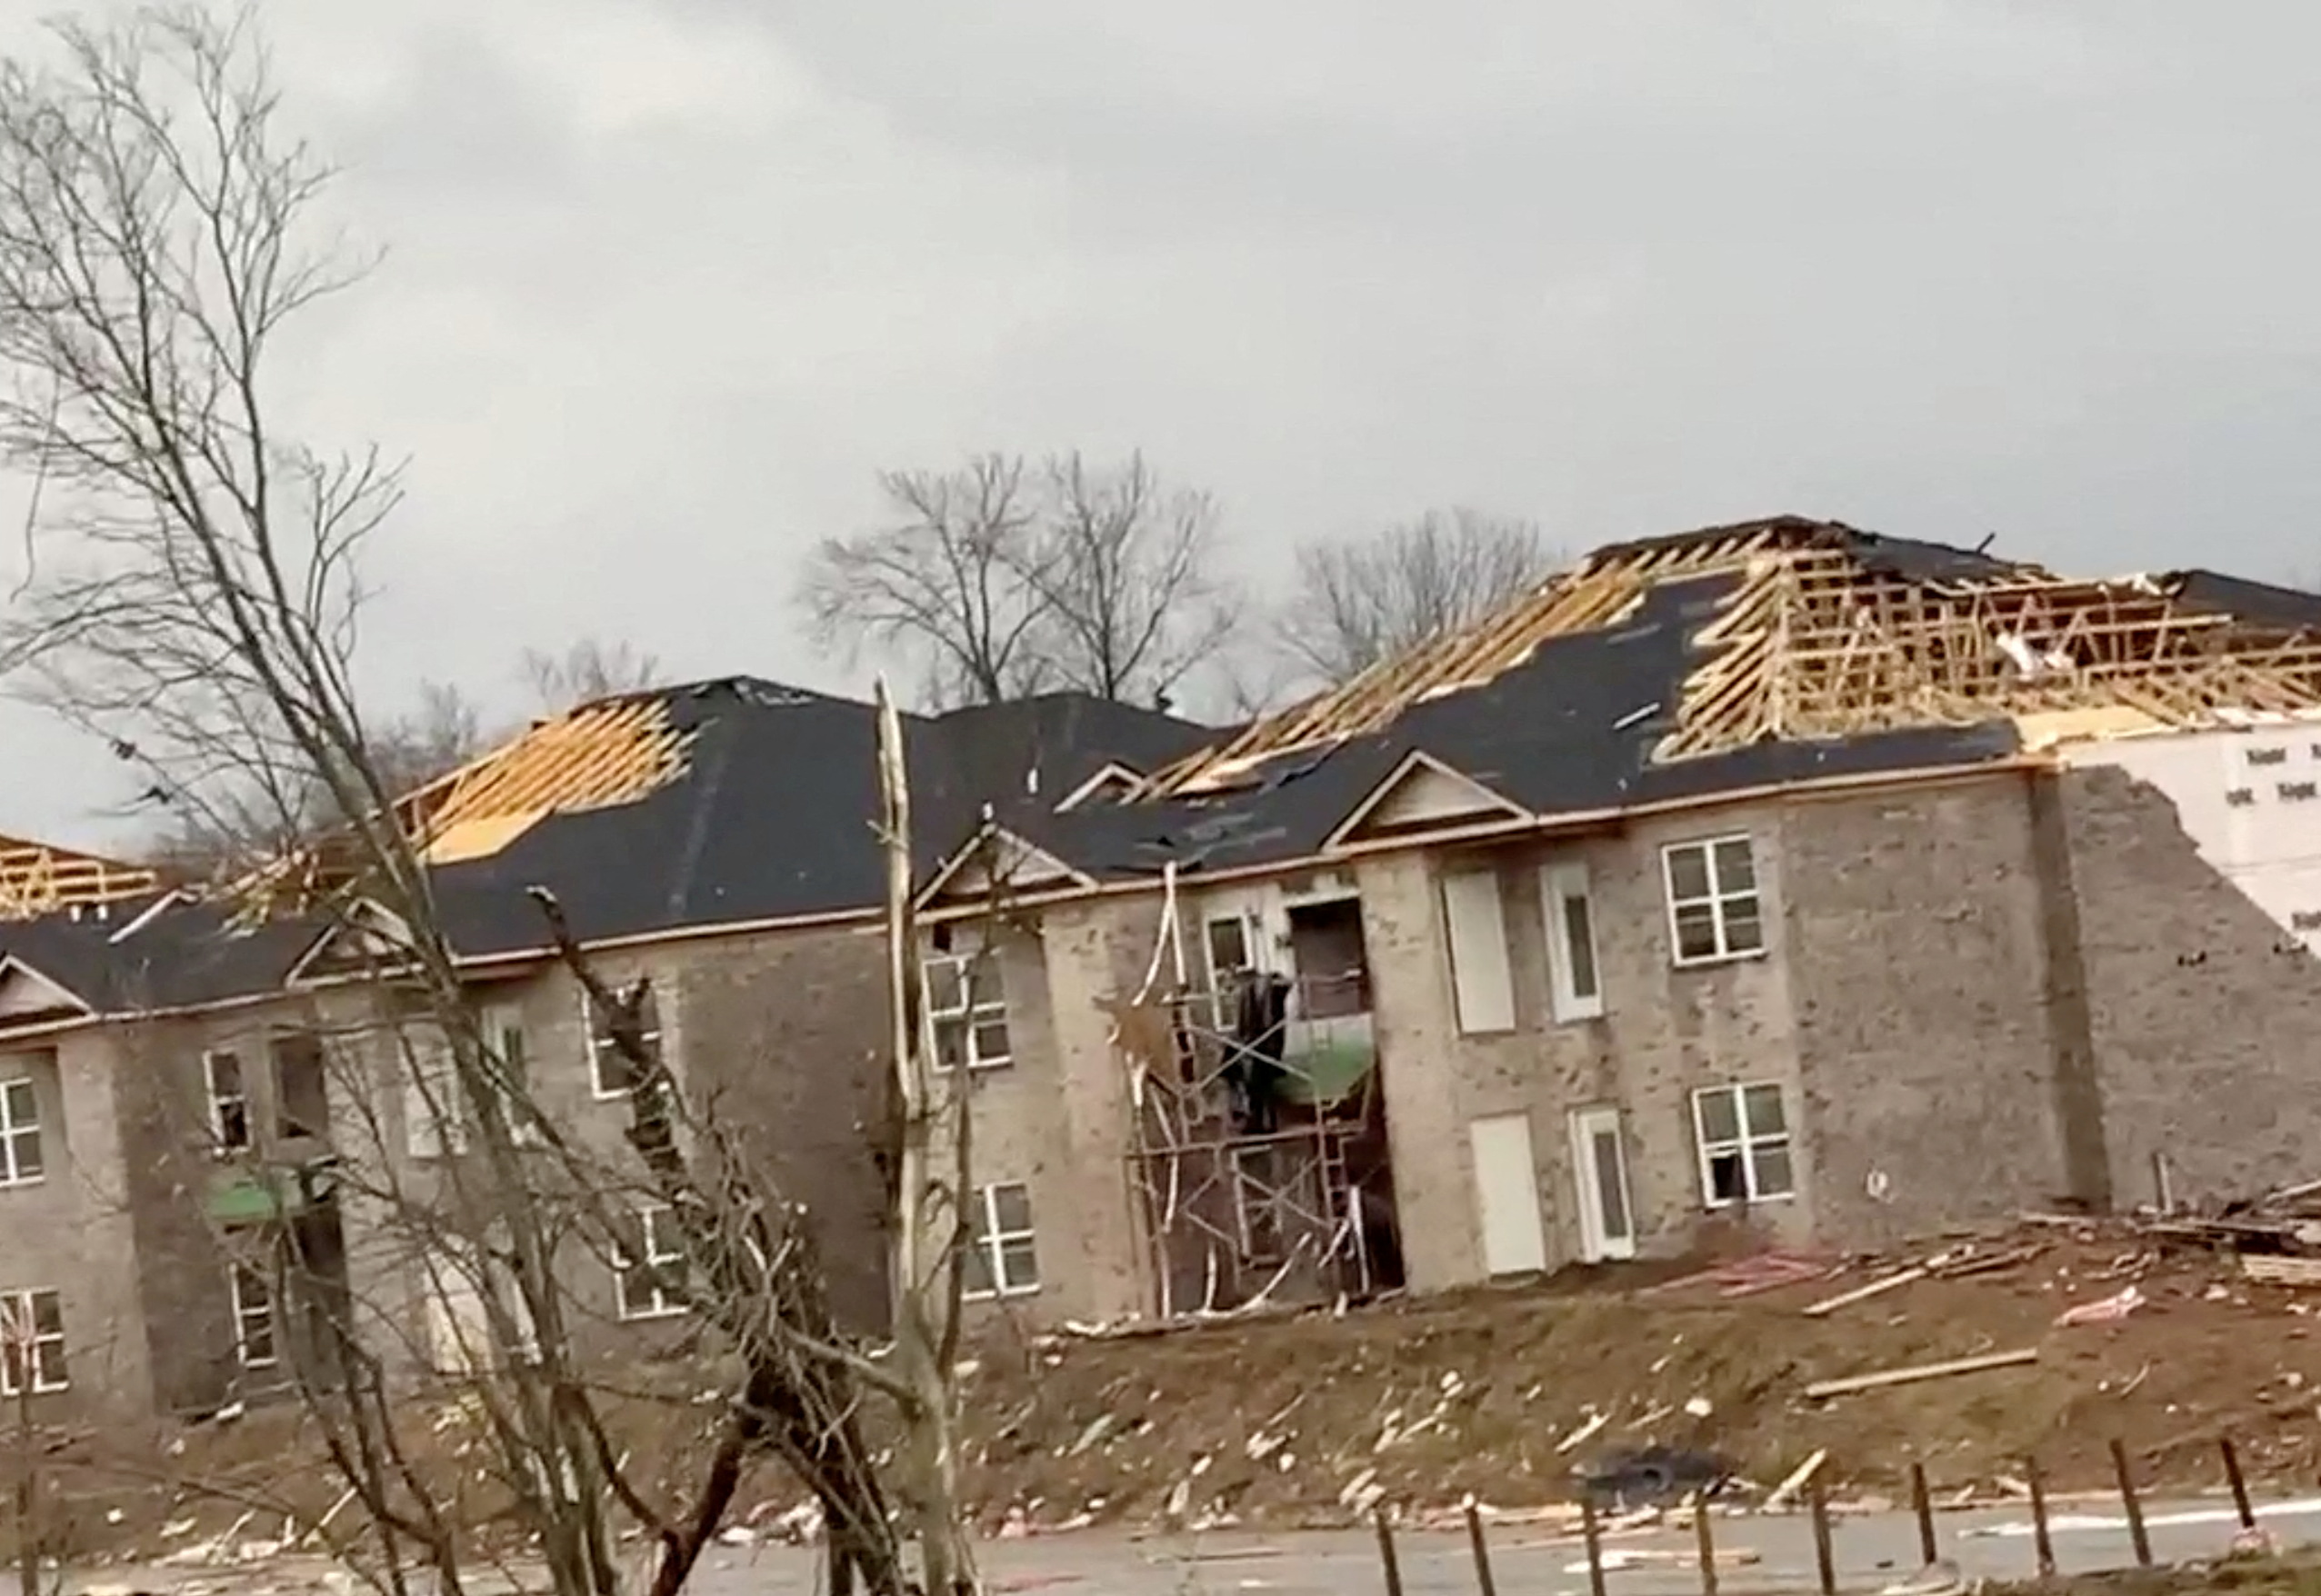 Tornado damage in Bowling Green, Kentucky